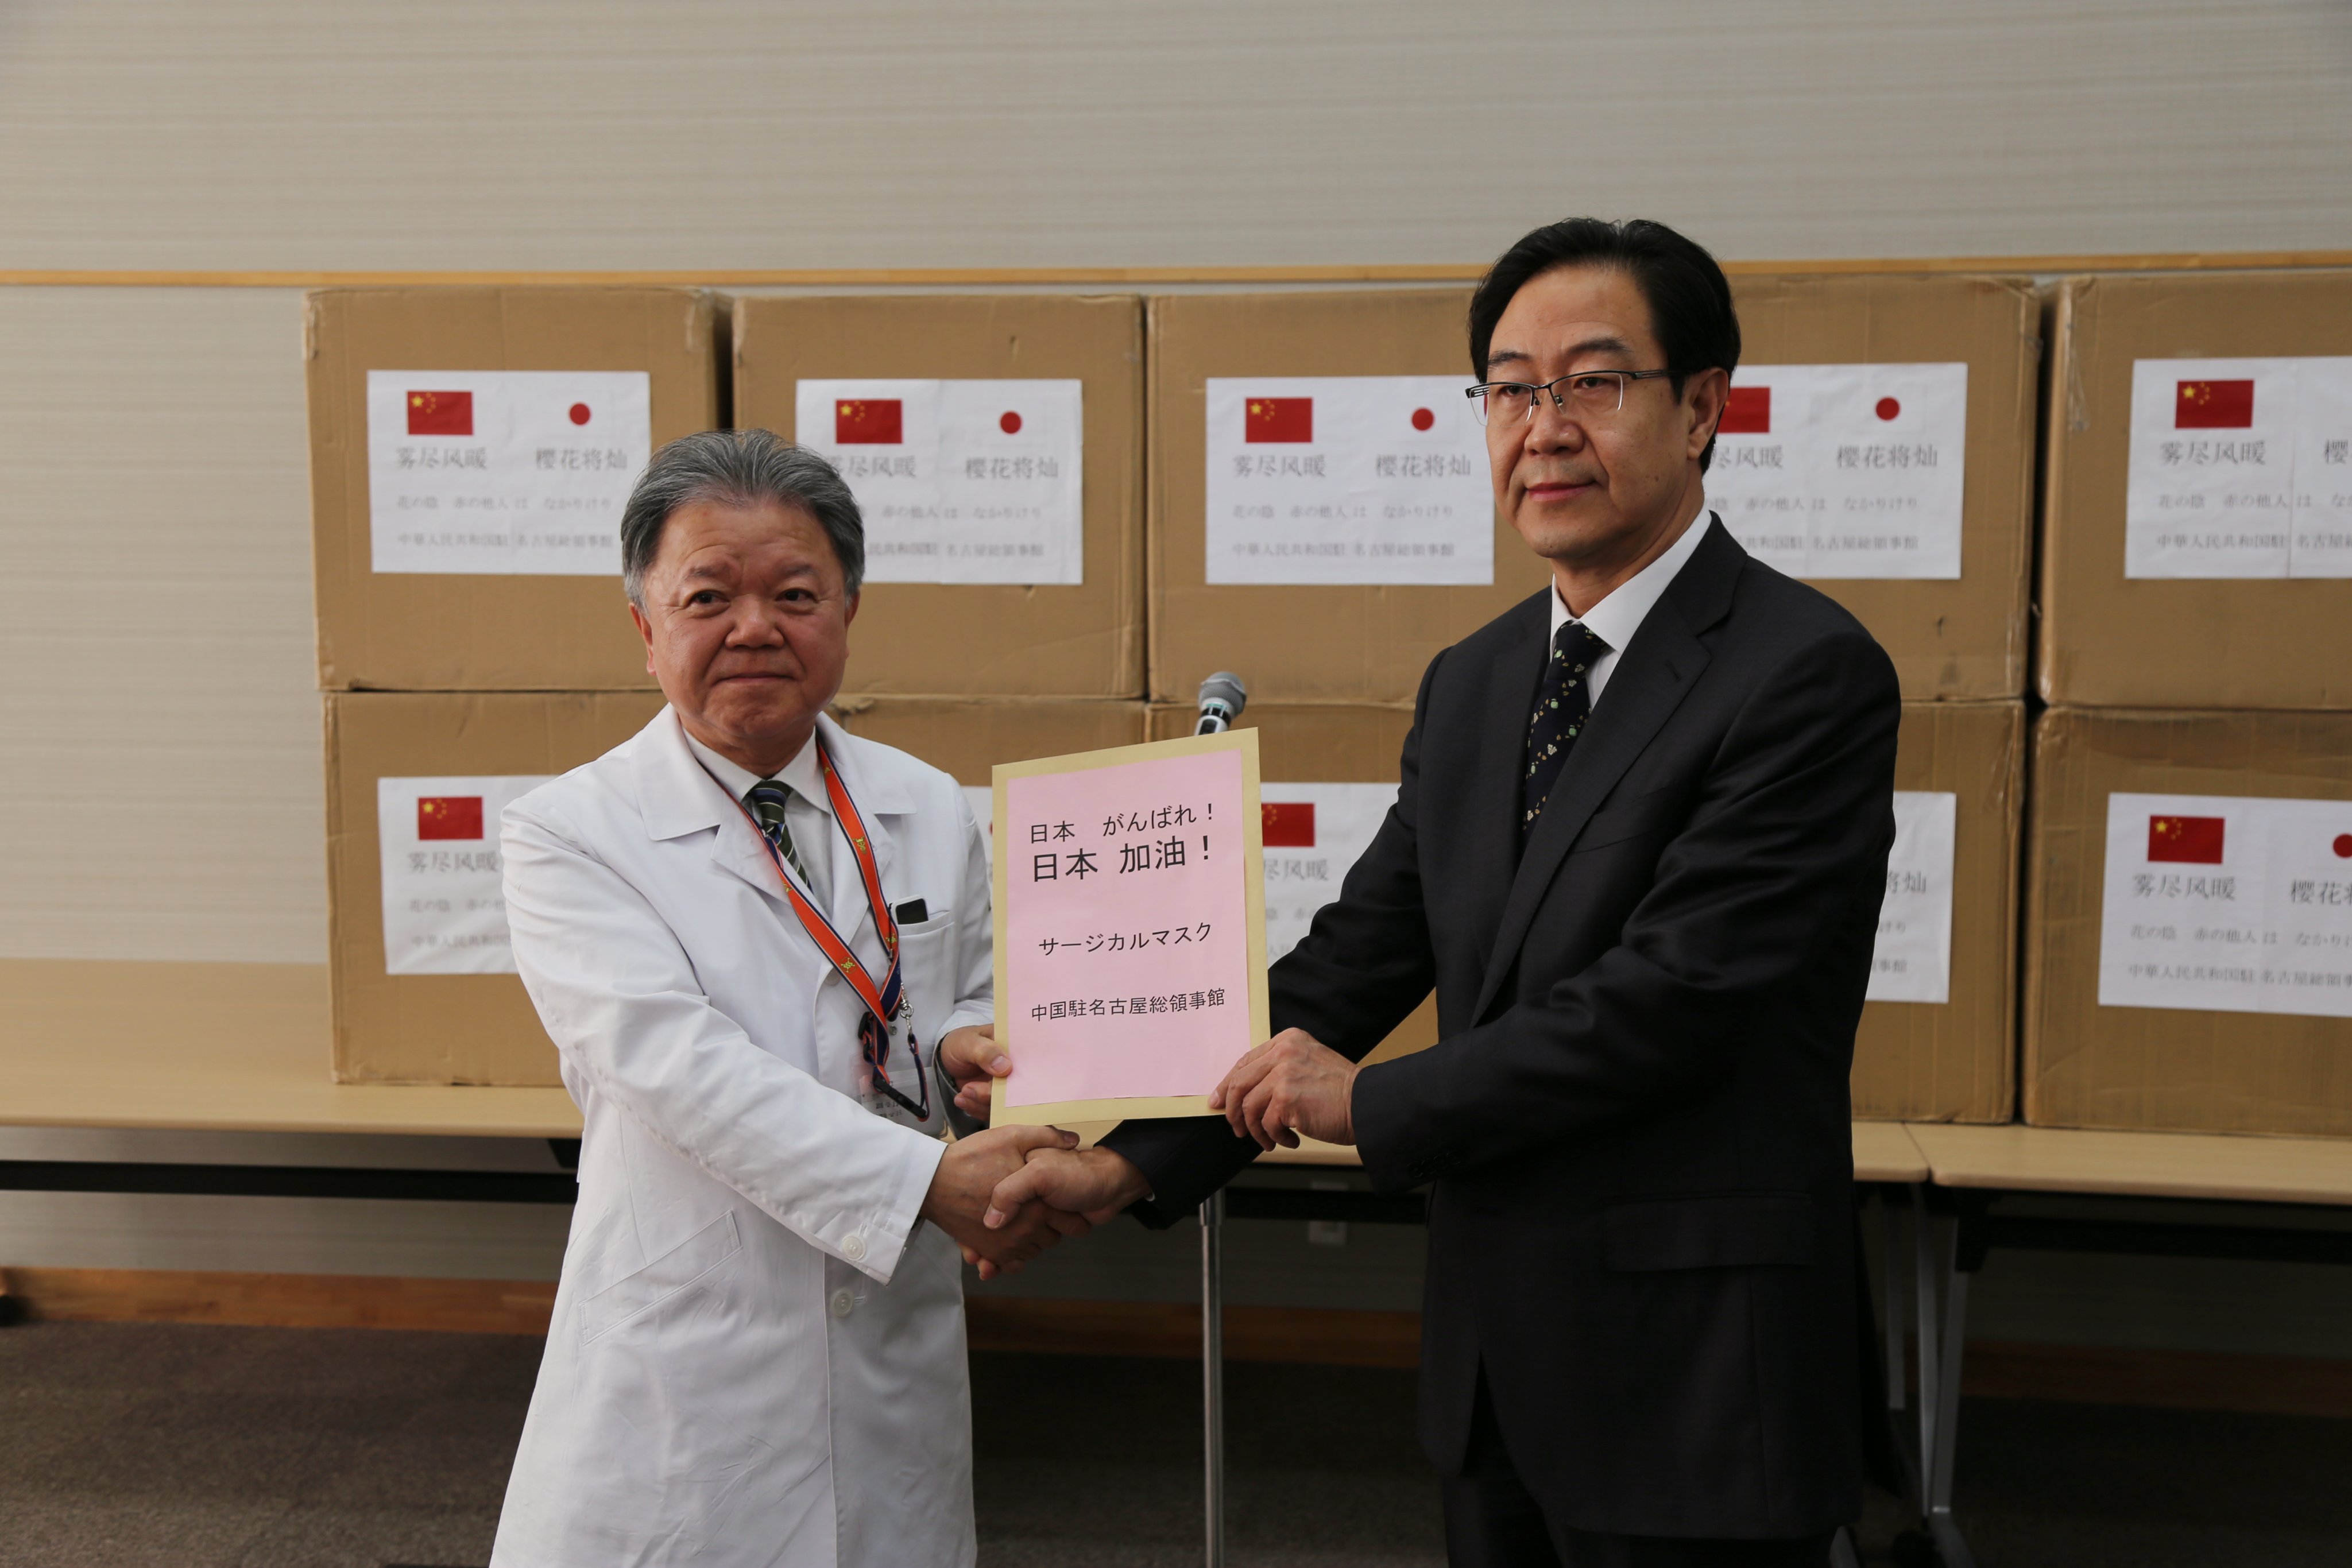 中国领馆向日本医院捐赠物资 也引了句诗